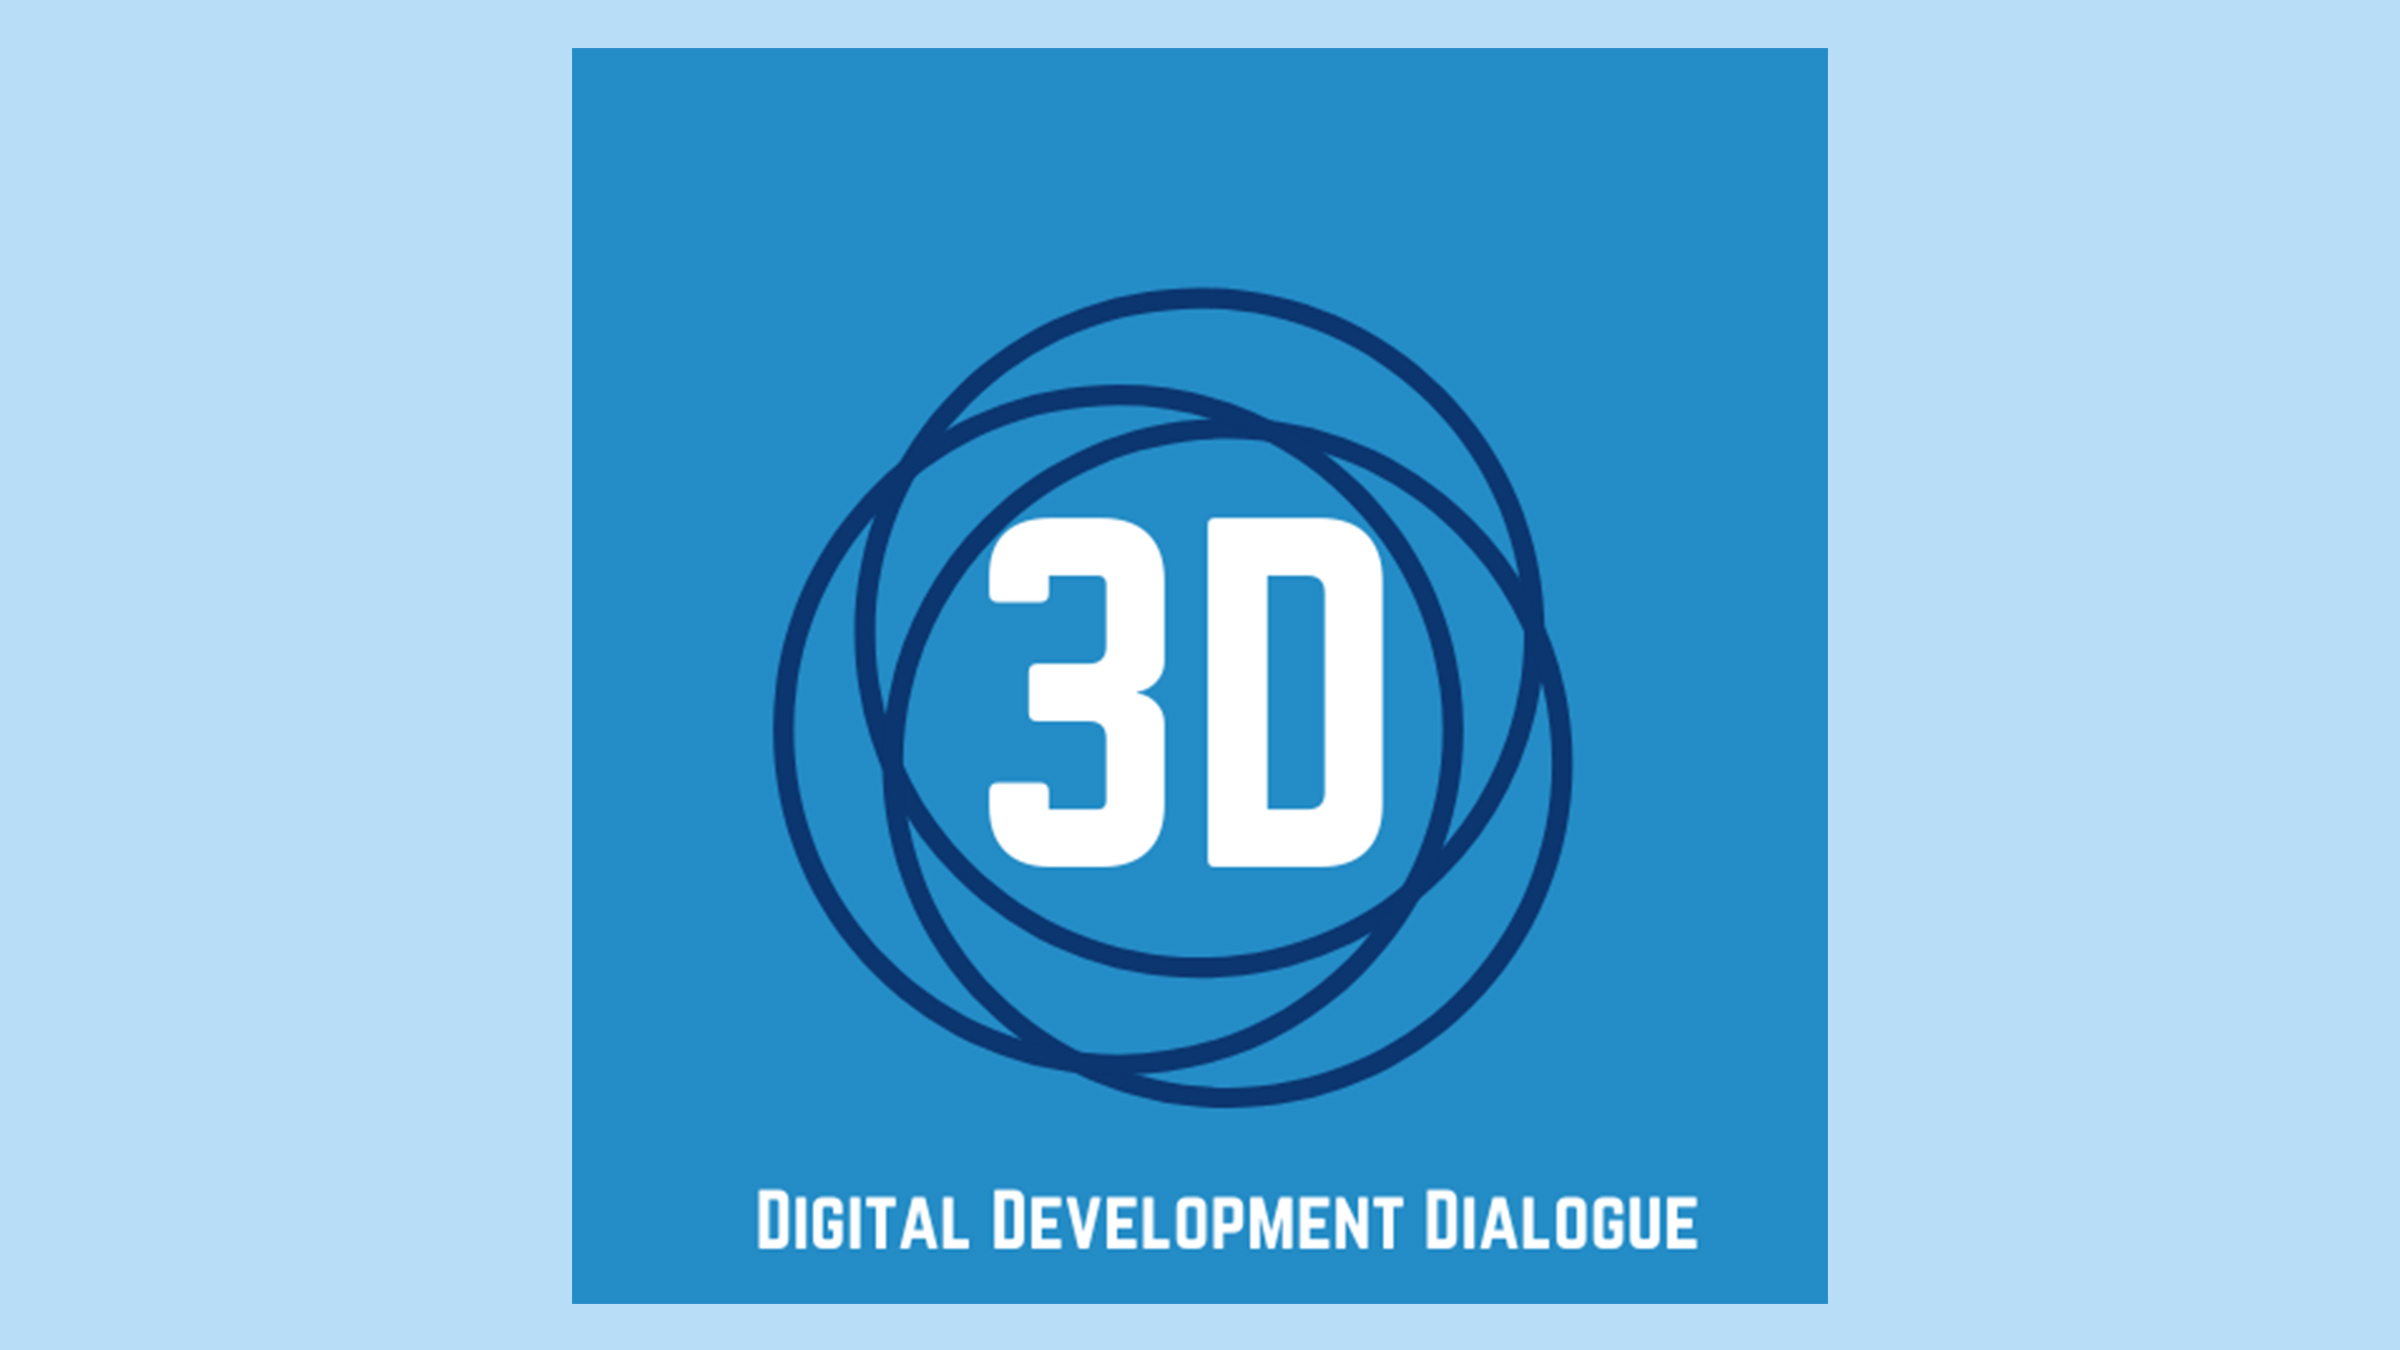 Digital Development Dialogue (3D)